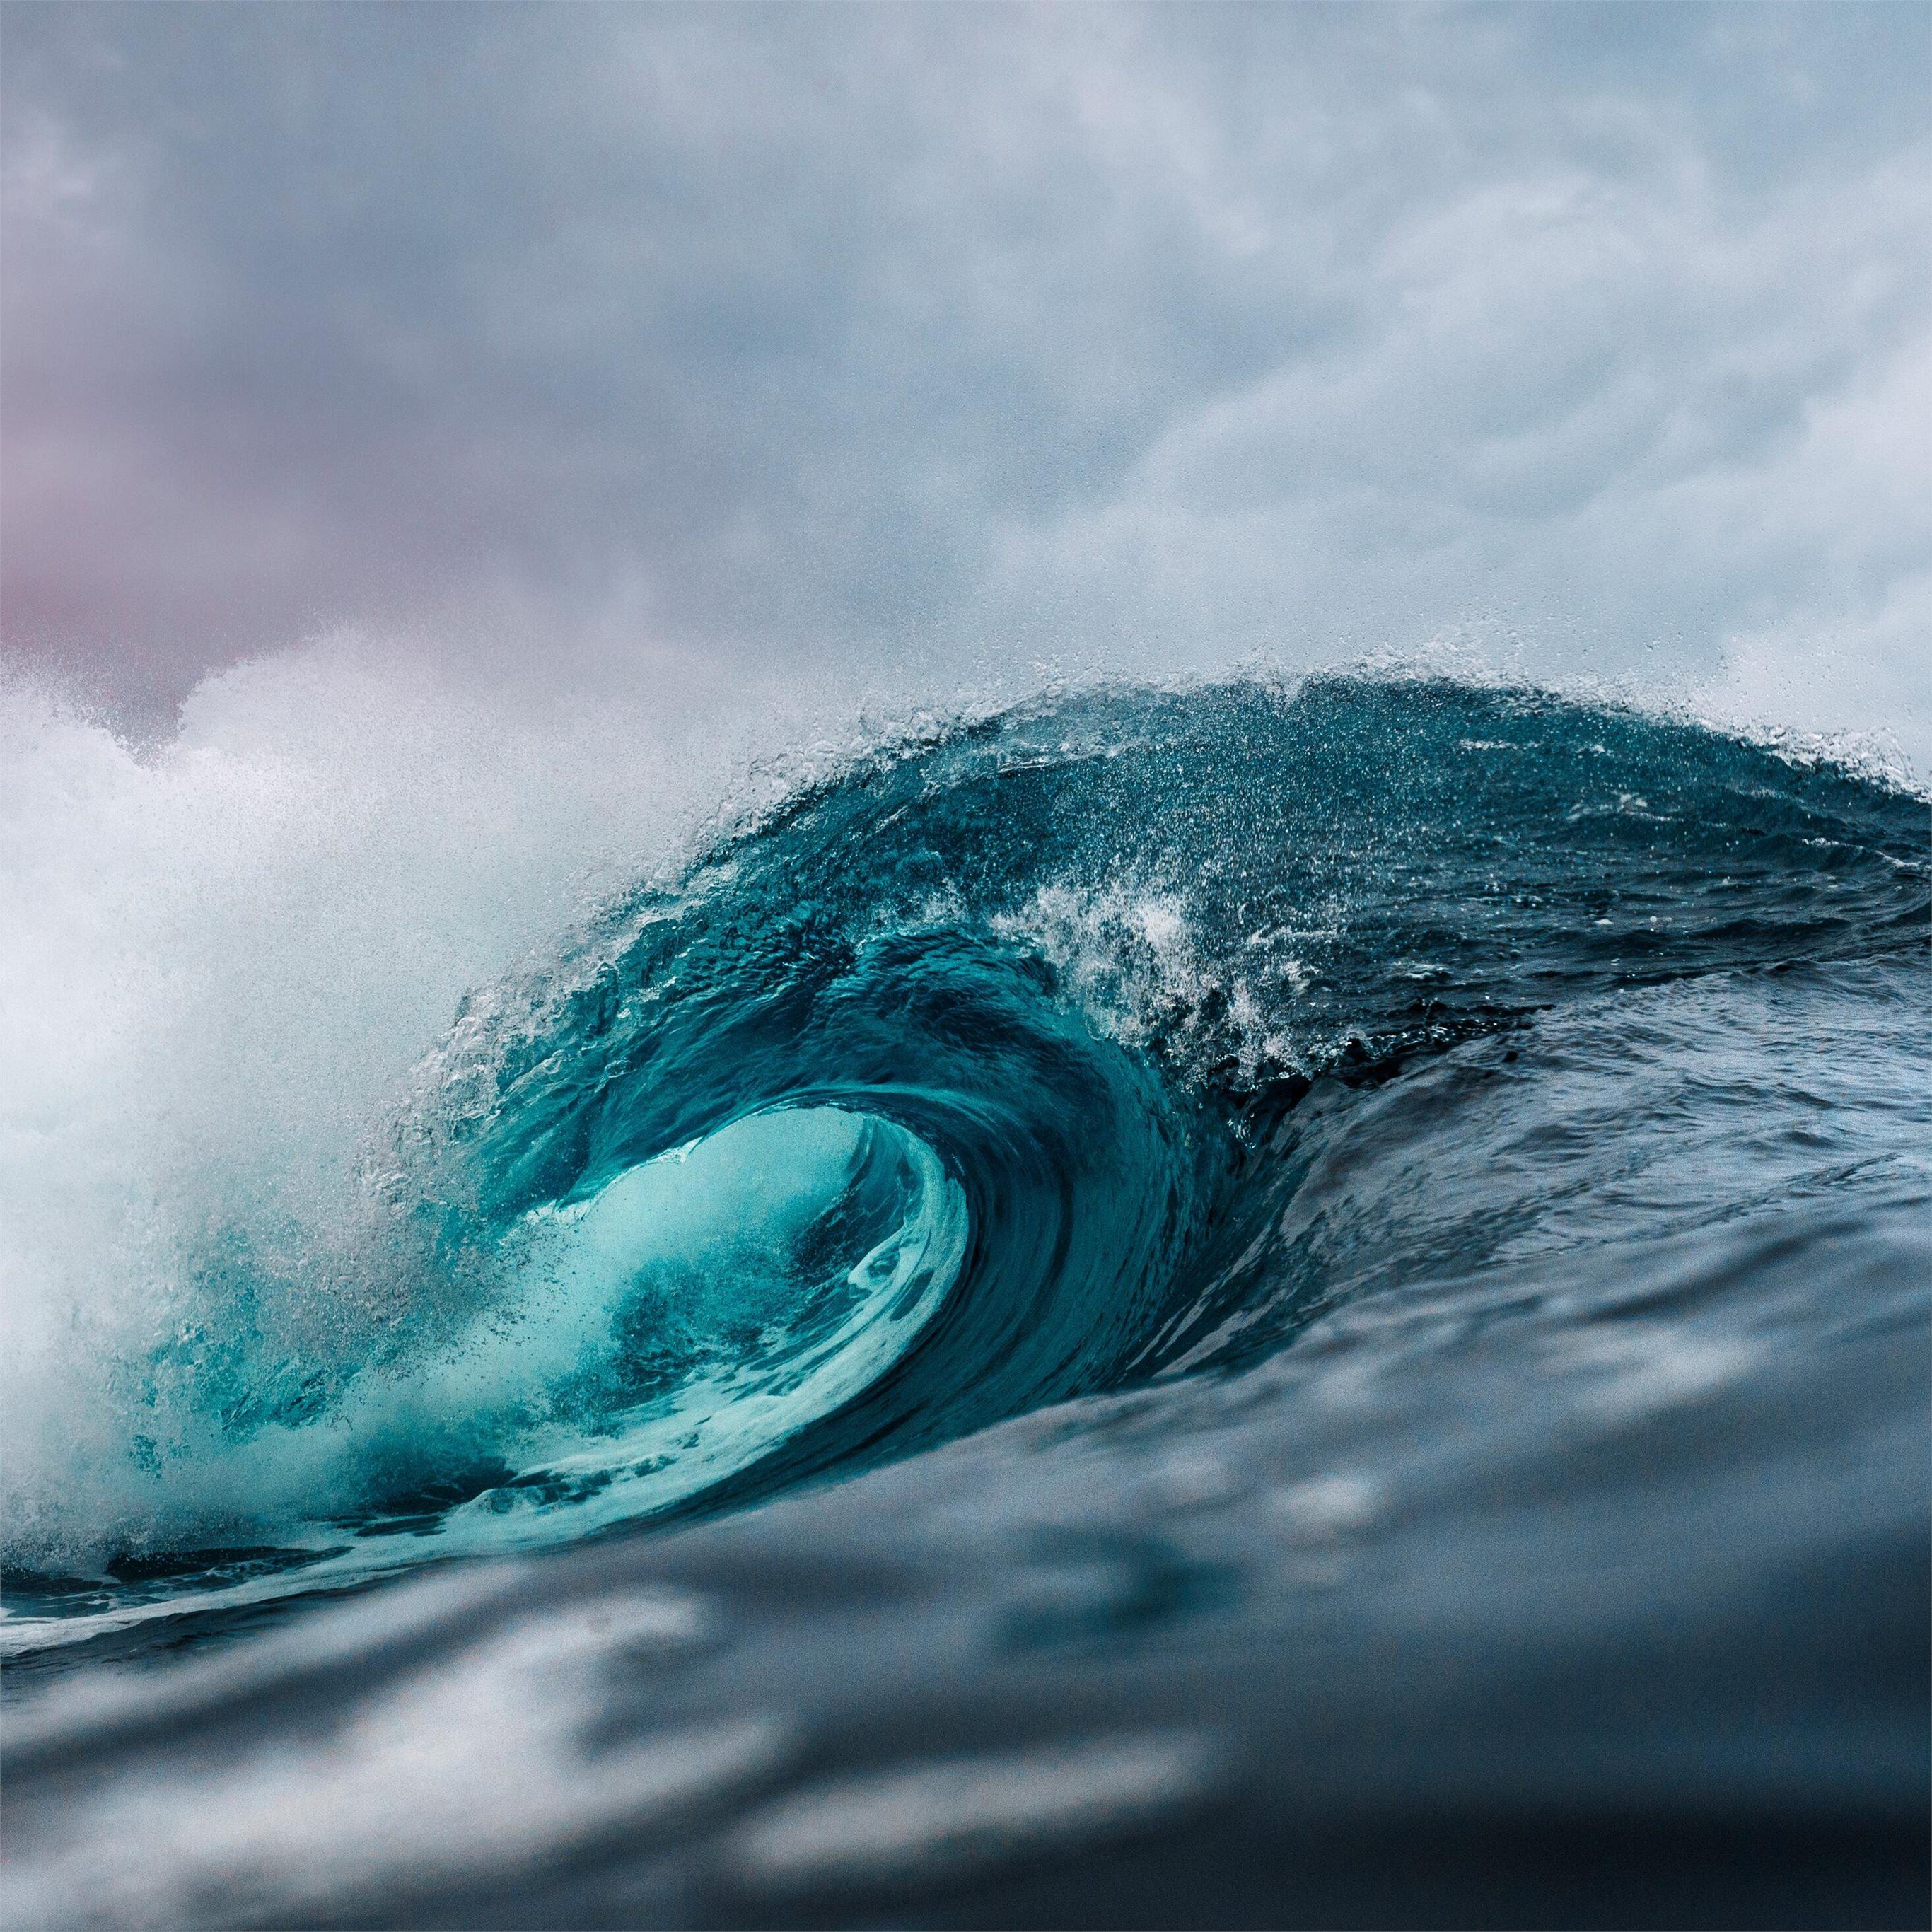 ocean wave 5k iPad Pro Wallpapers Free Download